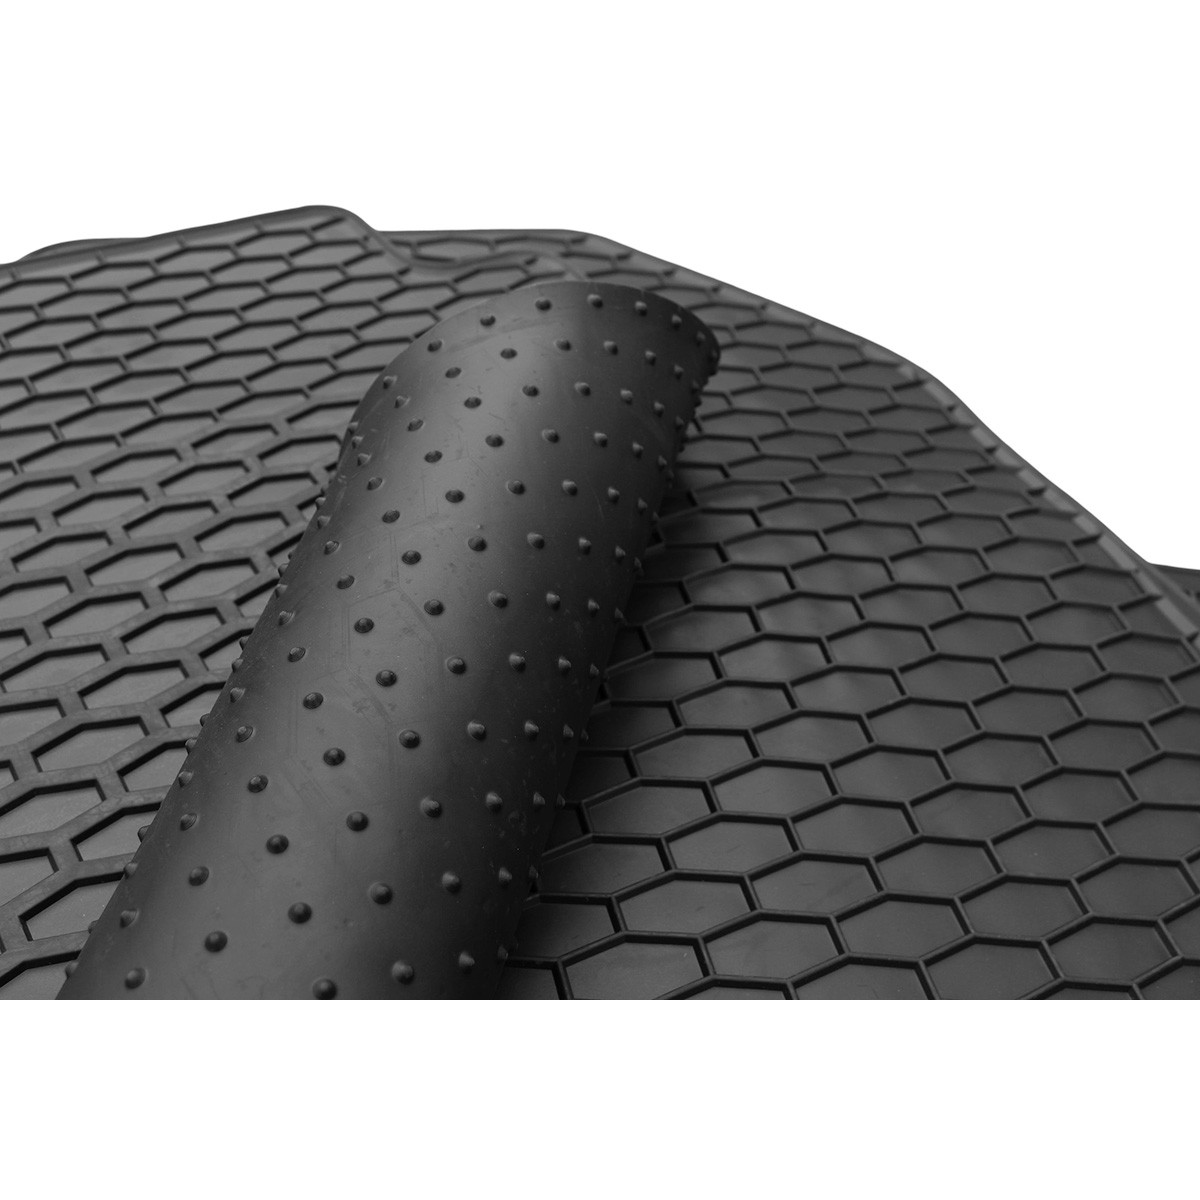 Rubber mats SKODA KODIAQ from 2017 4 pcs/ P221242 / black